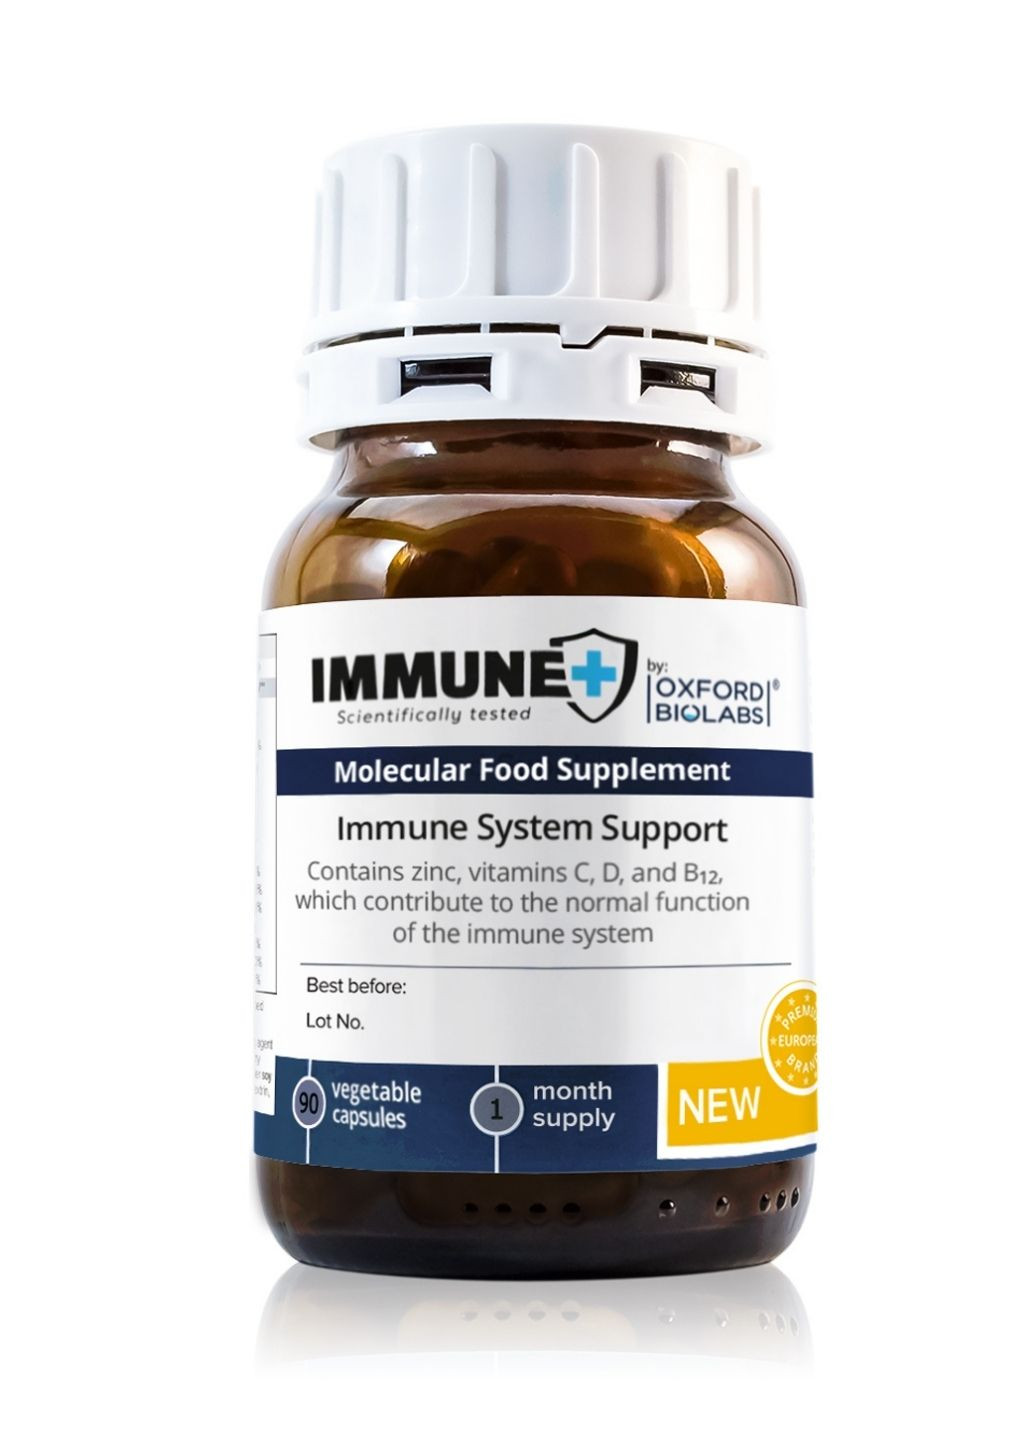 Молекулярная (диетическая) добавка для поддержания иммунитета IMMUNE+ Oxford Biolabs